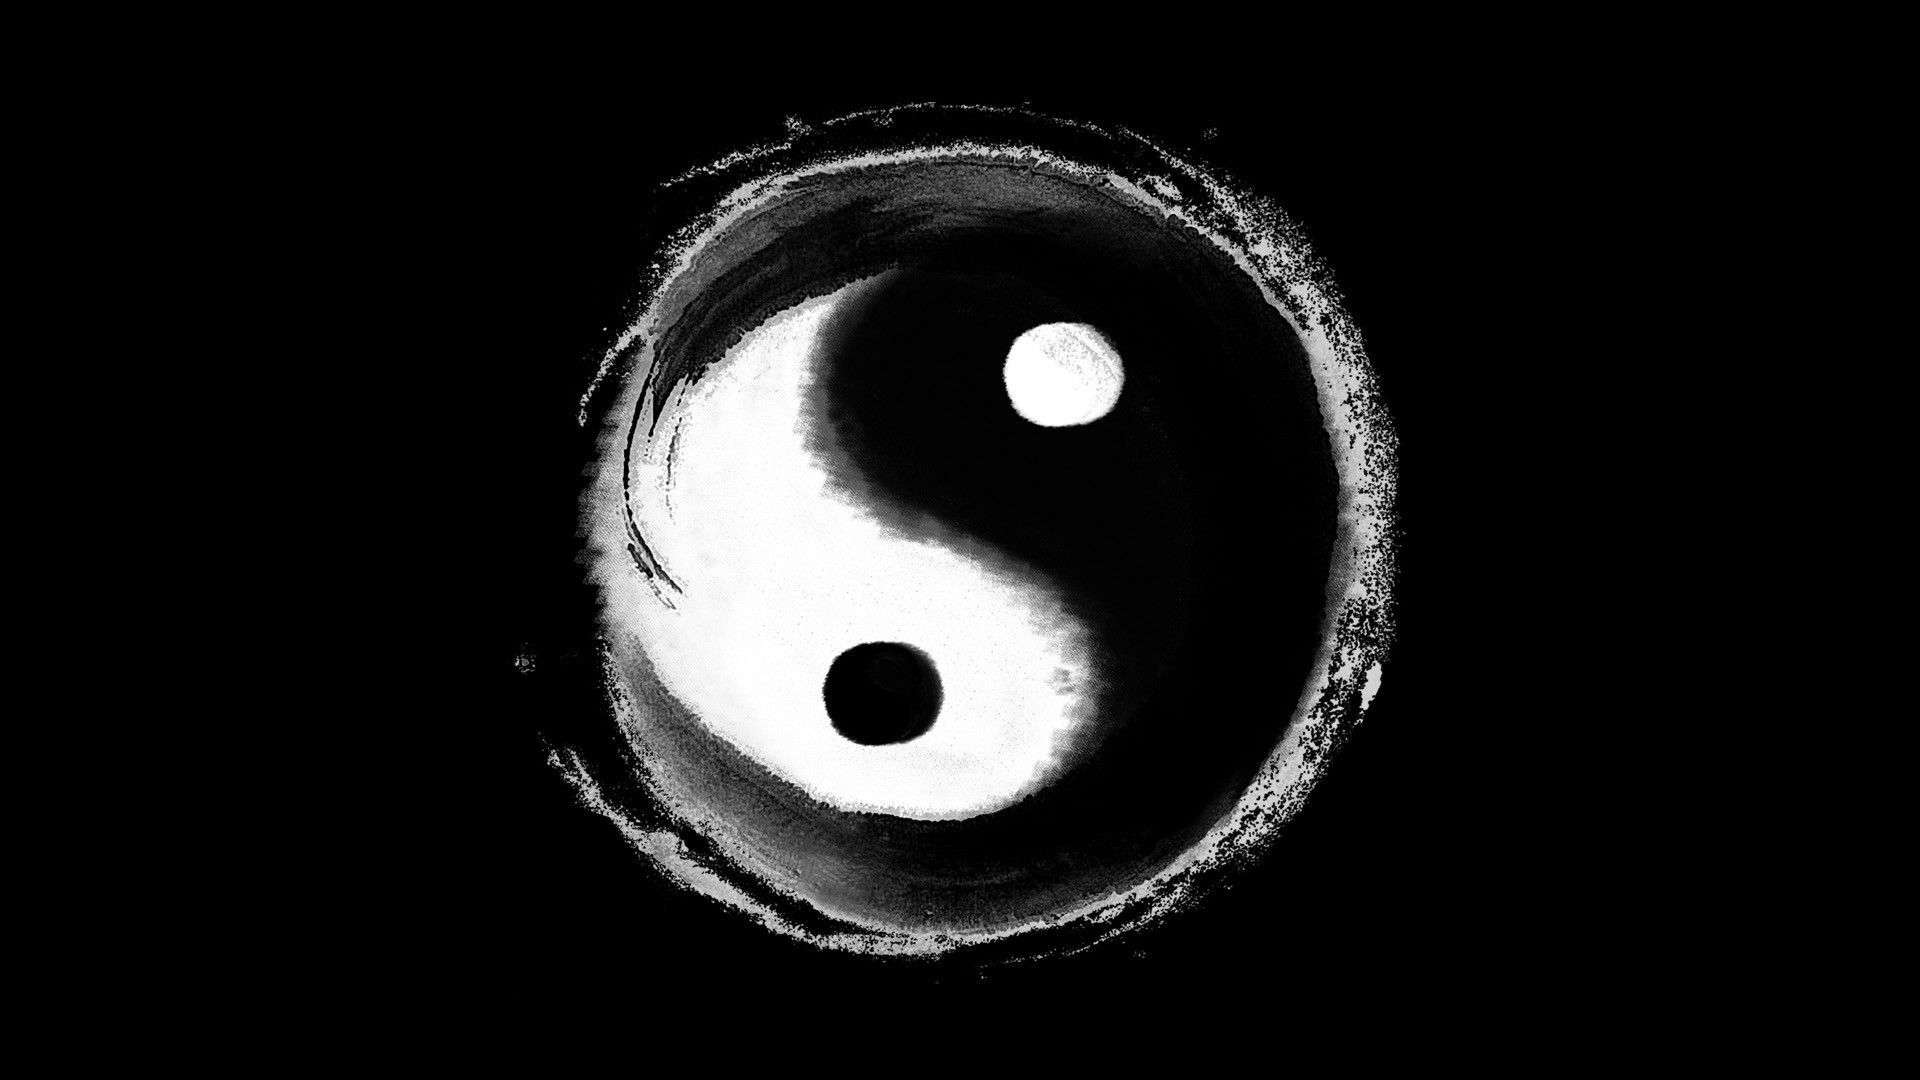 China yin yang wallpaper | 1920x1080 | 205239 | WallpaperUP